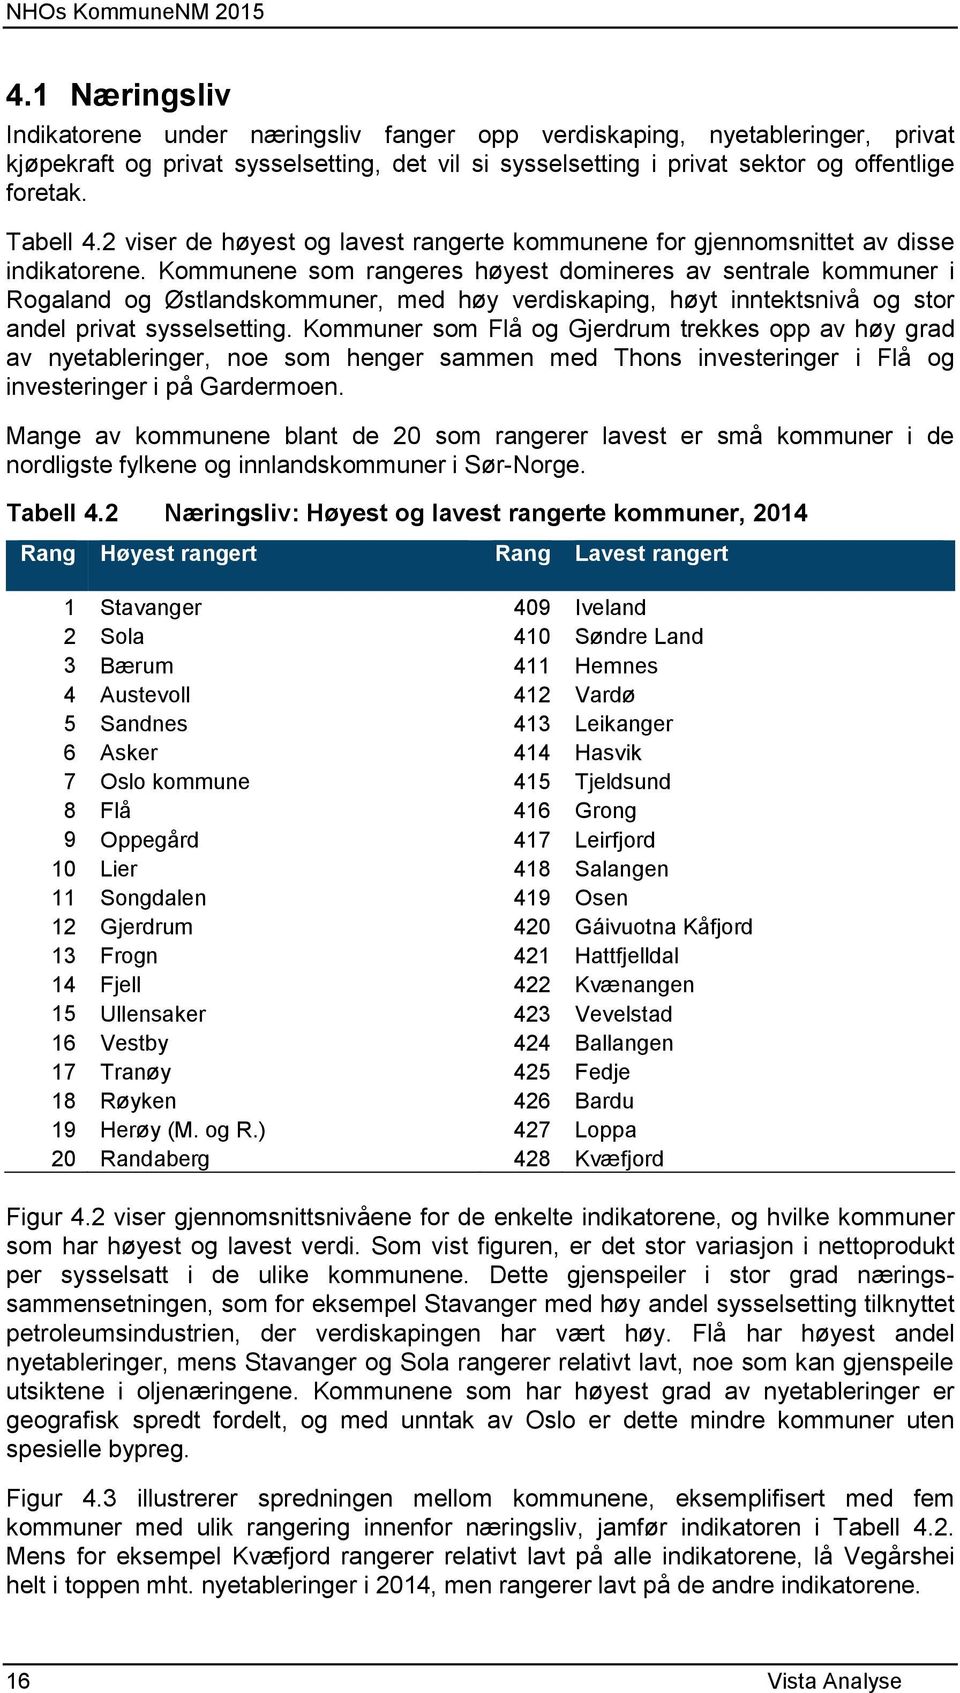 Kommunene som rangeres høyest domineres av sentrale kommuner i Rogaland og Østlandskommuner, med høy verdiskaping, høyt inntektsnivå og stor andel privat sysselsetting.